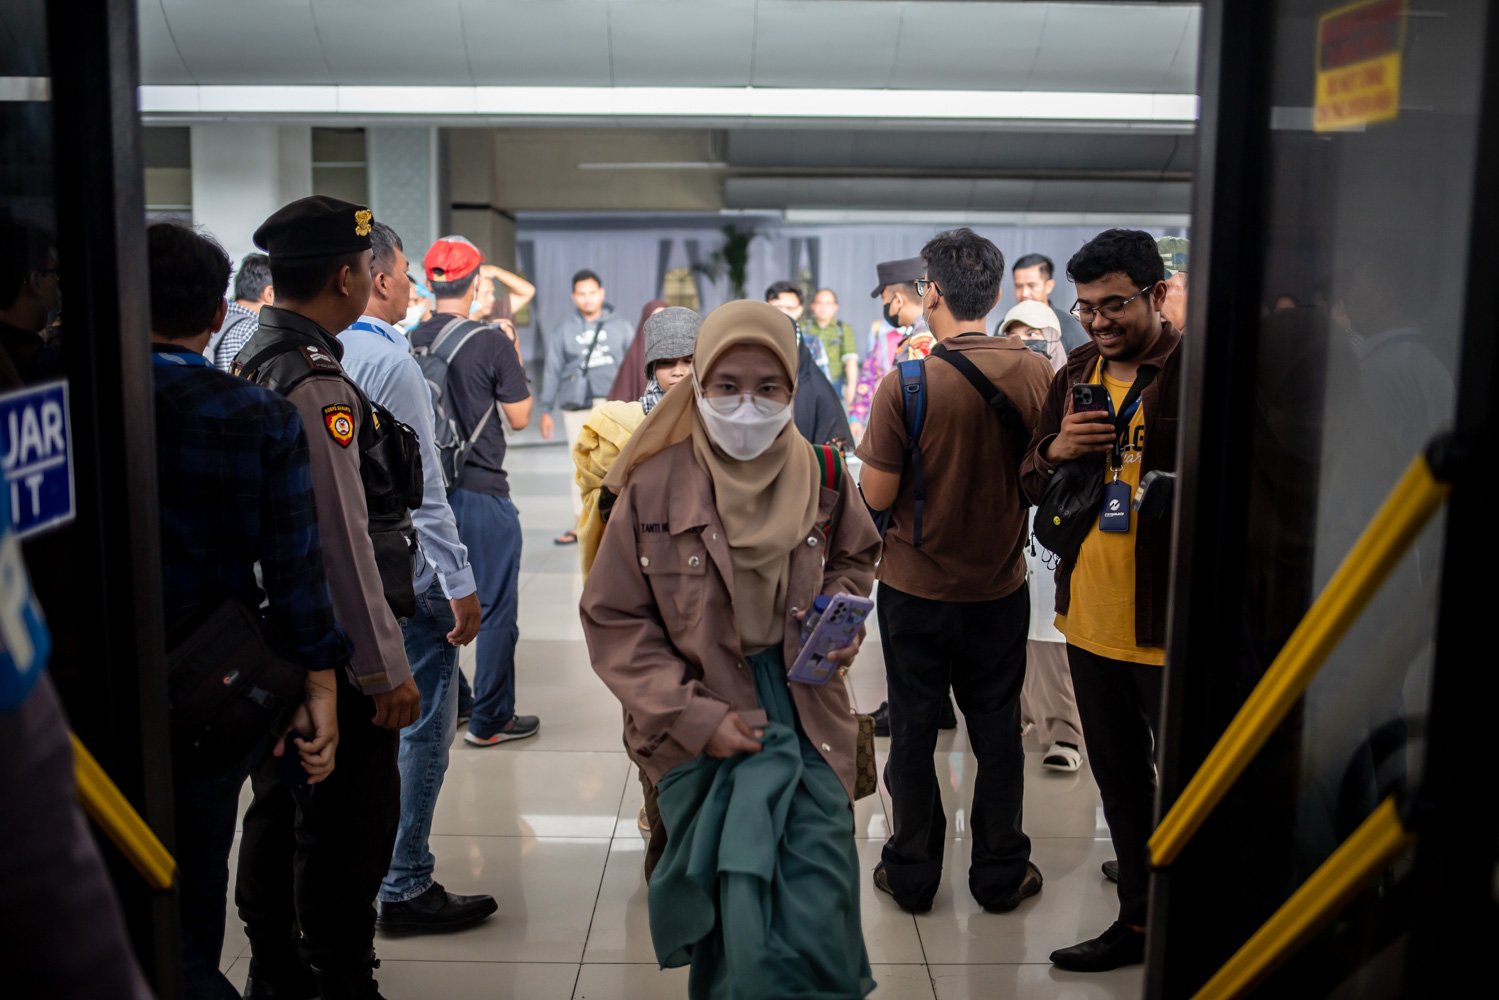 Sejumlah warga negara Indonesia (WNI) asal Sudan menaiki bus selepas tiba di Bandara Soekarno Hatta, Jumat (28/4). Sebanyak 385 WNI dievakuasi akibat konflik bersenjata yang terjadi di Sudan terdiri dari 248 perempuan, 137 laki-laki, dan 43 anakanak. Sebagian besar adalah mahasiswa Indonesia, pekerja migran Indonesia, karyawan perusahaan dan staf KBRI.